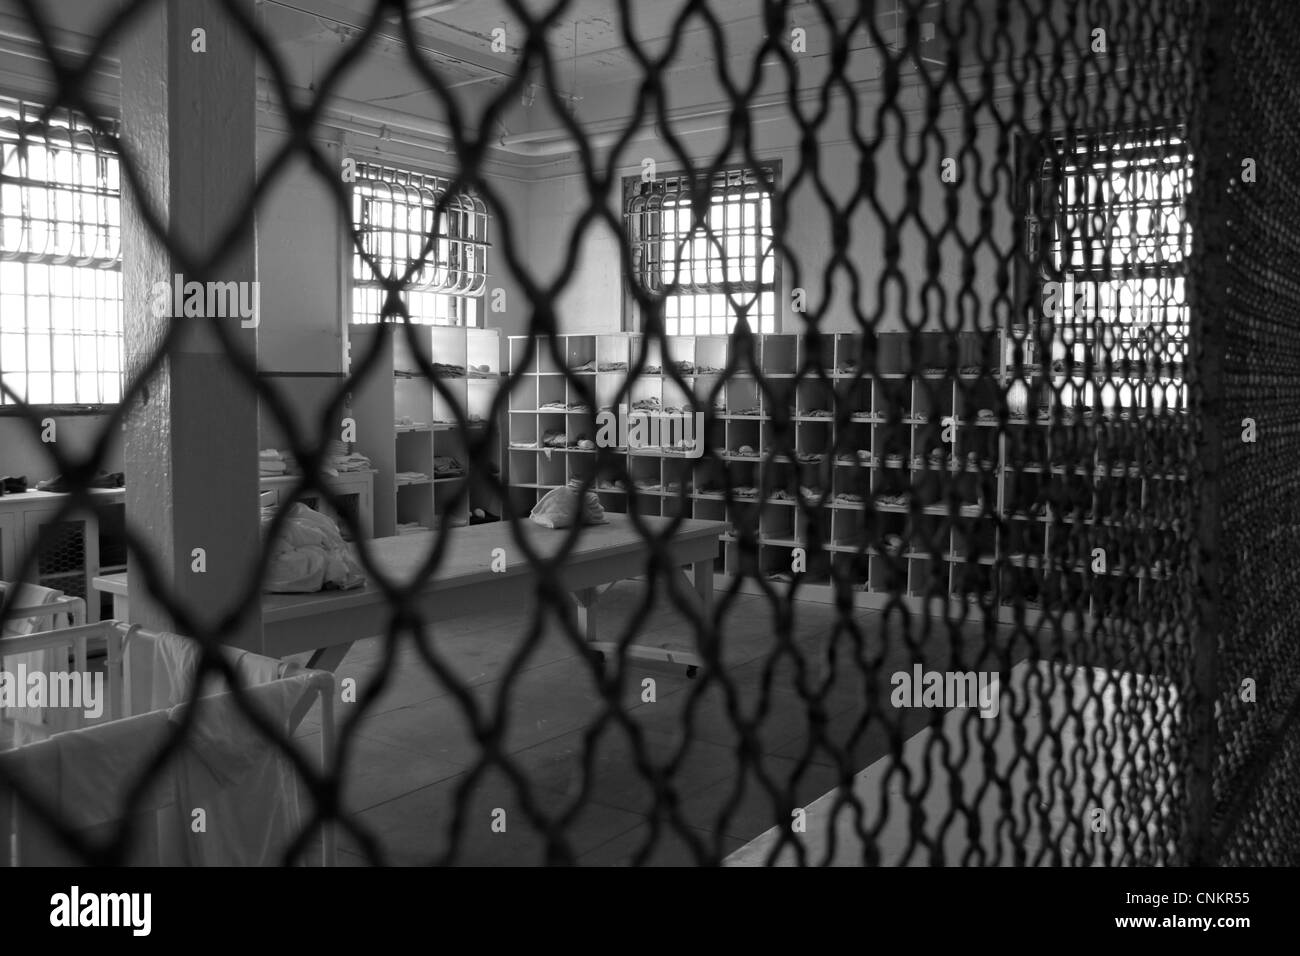 La prison d'Alcatraz, San Francisco, l'Amérique, grillage de séparation. noir et blanc, vintage vestiaire, noir et blanc Banque D'Images